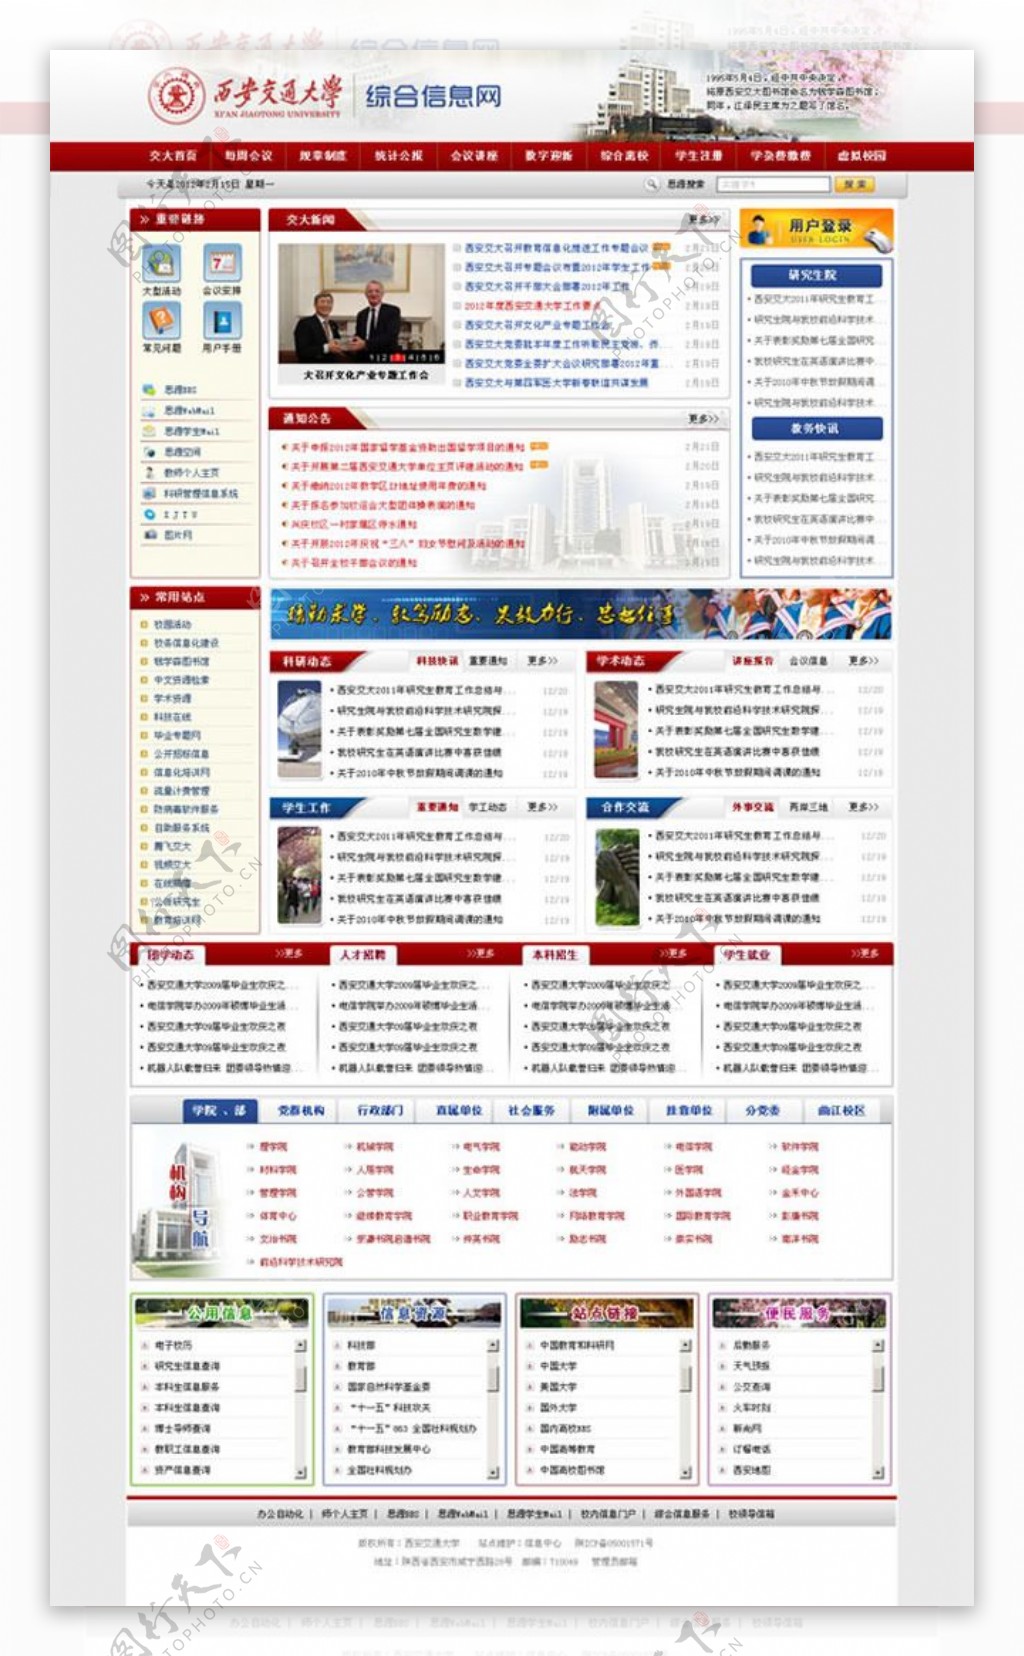 西安交通大学网站首页模板psd素材